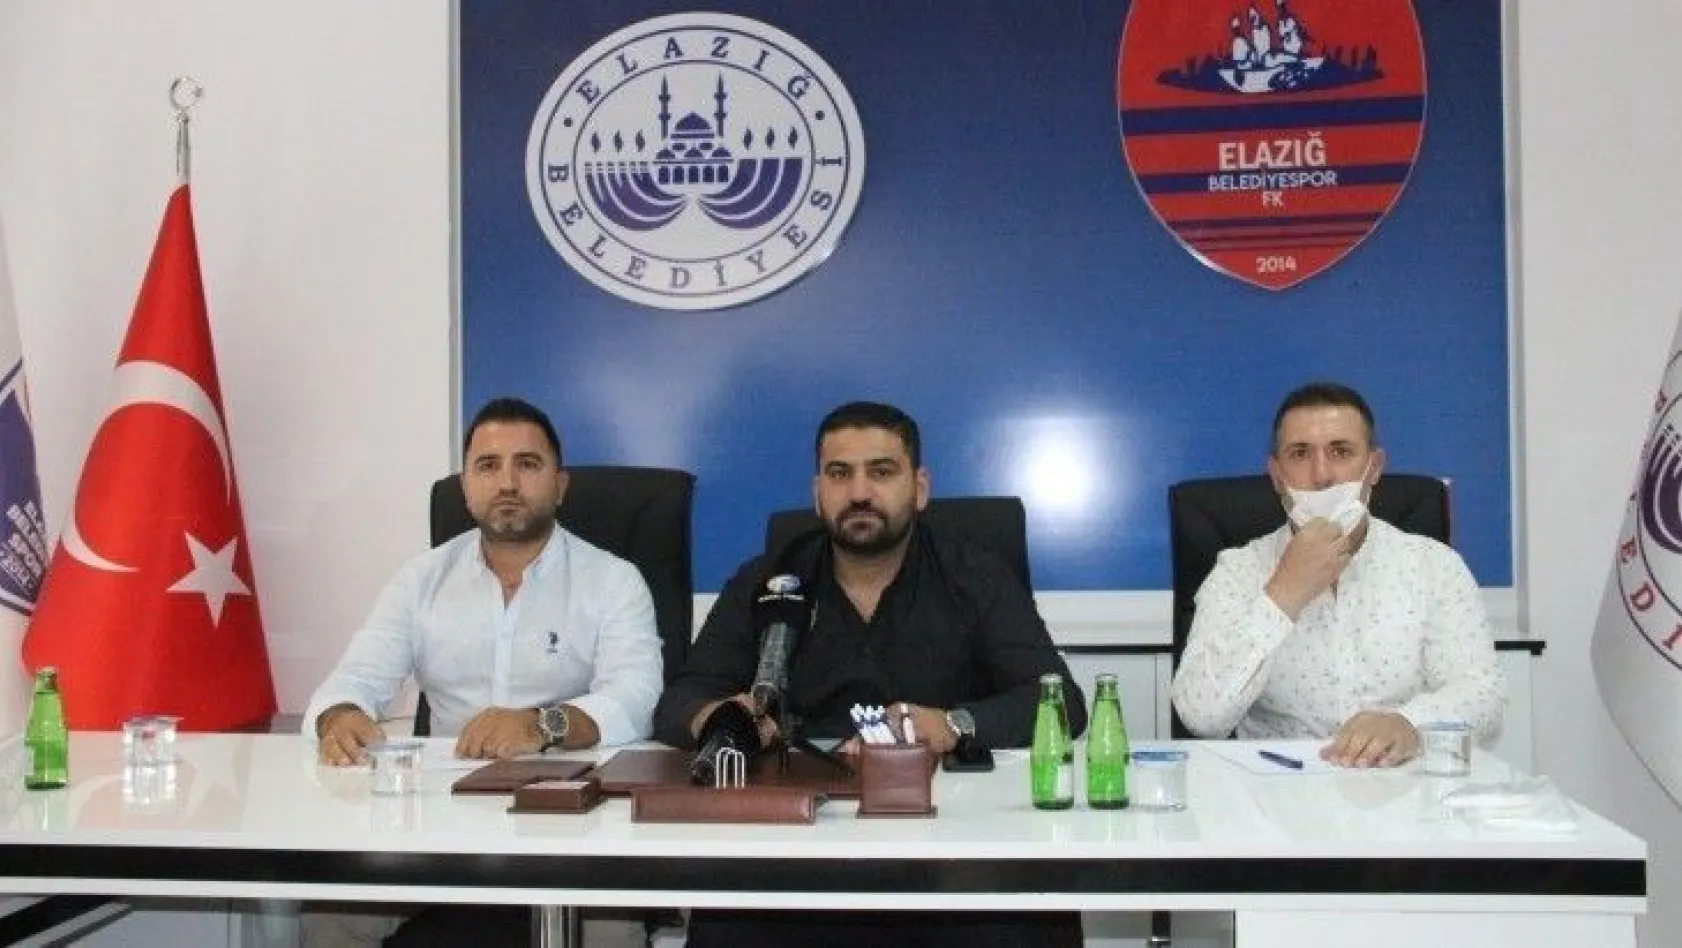 Elazığ Belediyespor'da yeni yönetim hedeflerini açıkladı